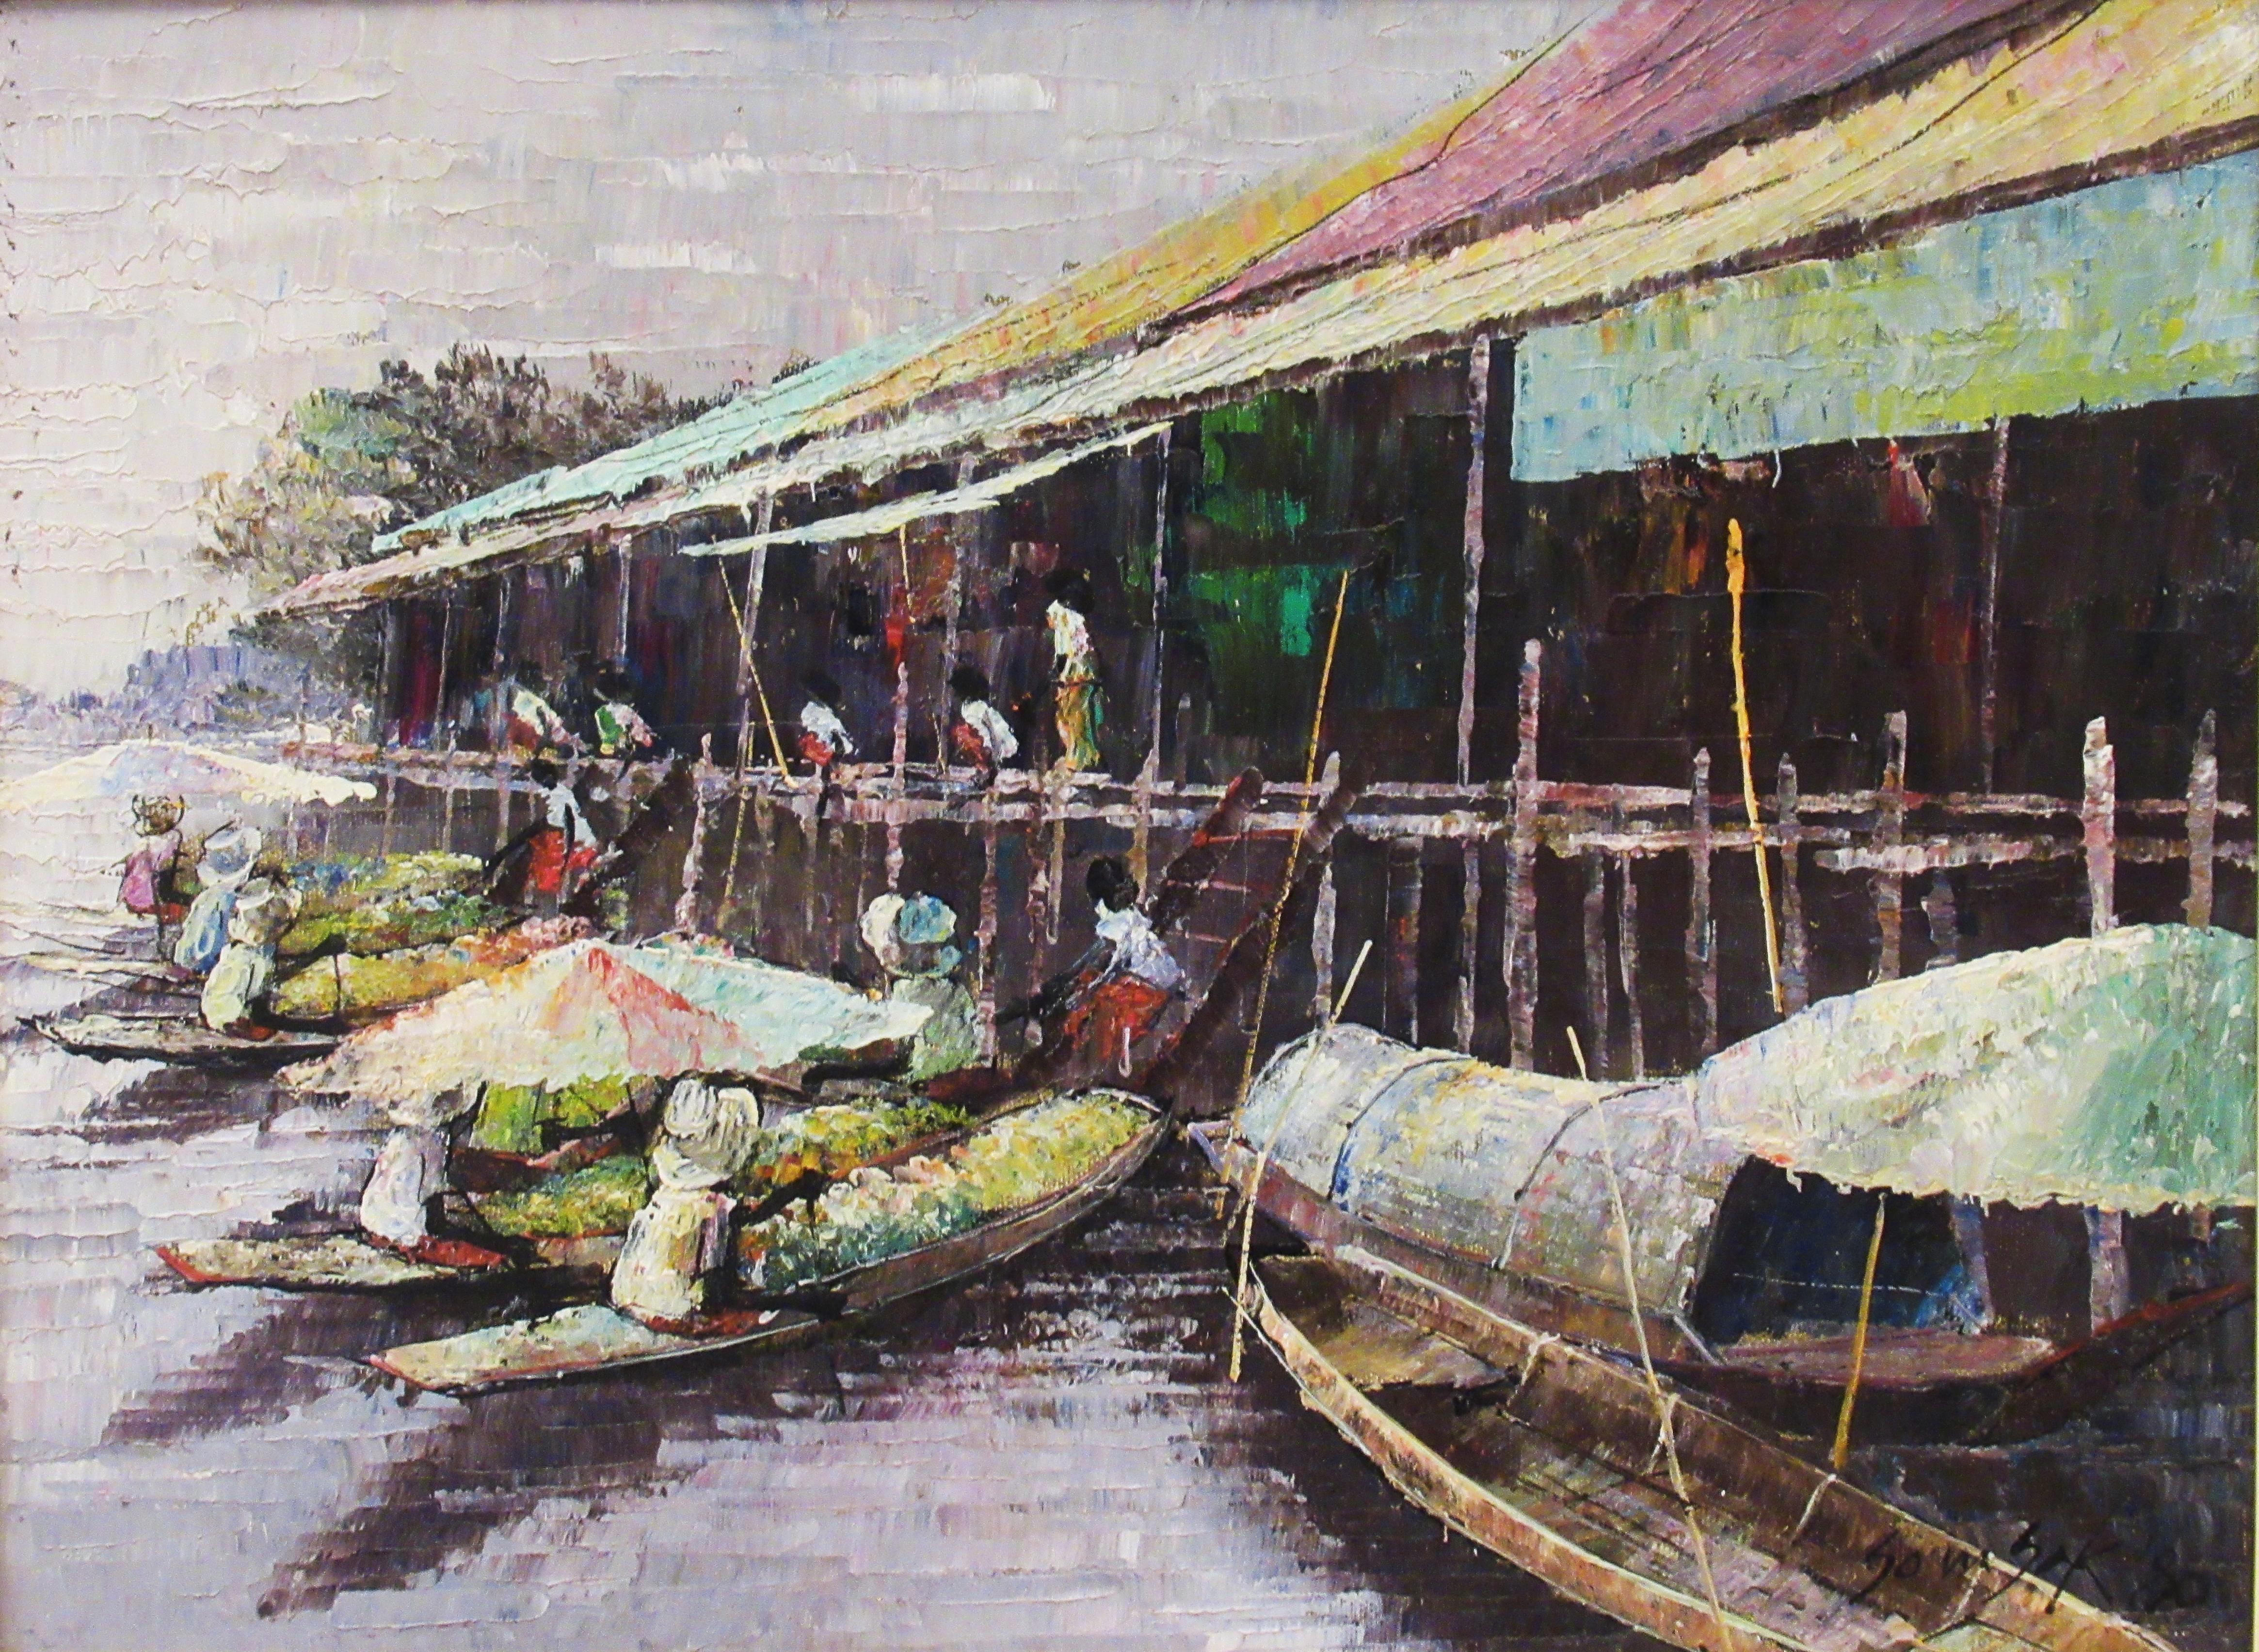 Schwebender Markt, Thailand – Painting von Somsak Chowtadapong